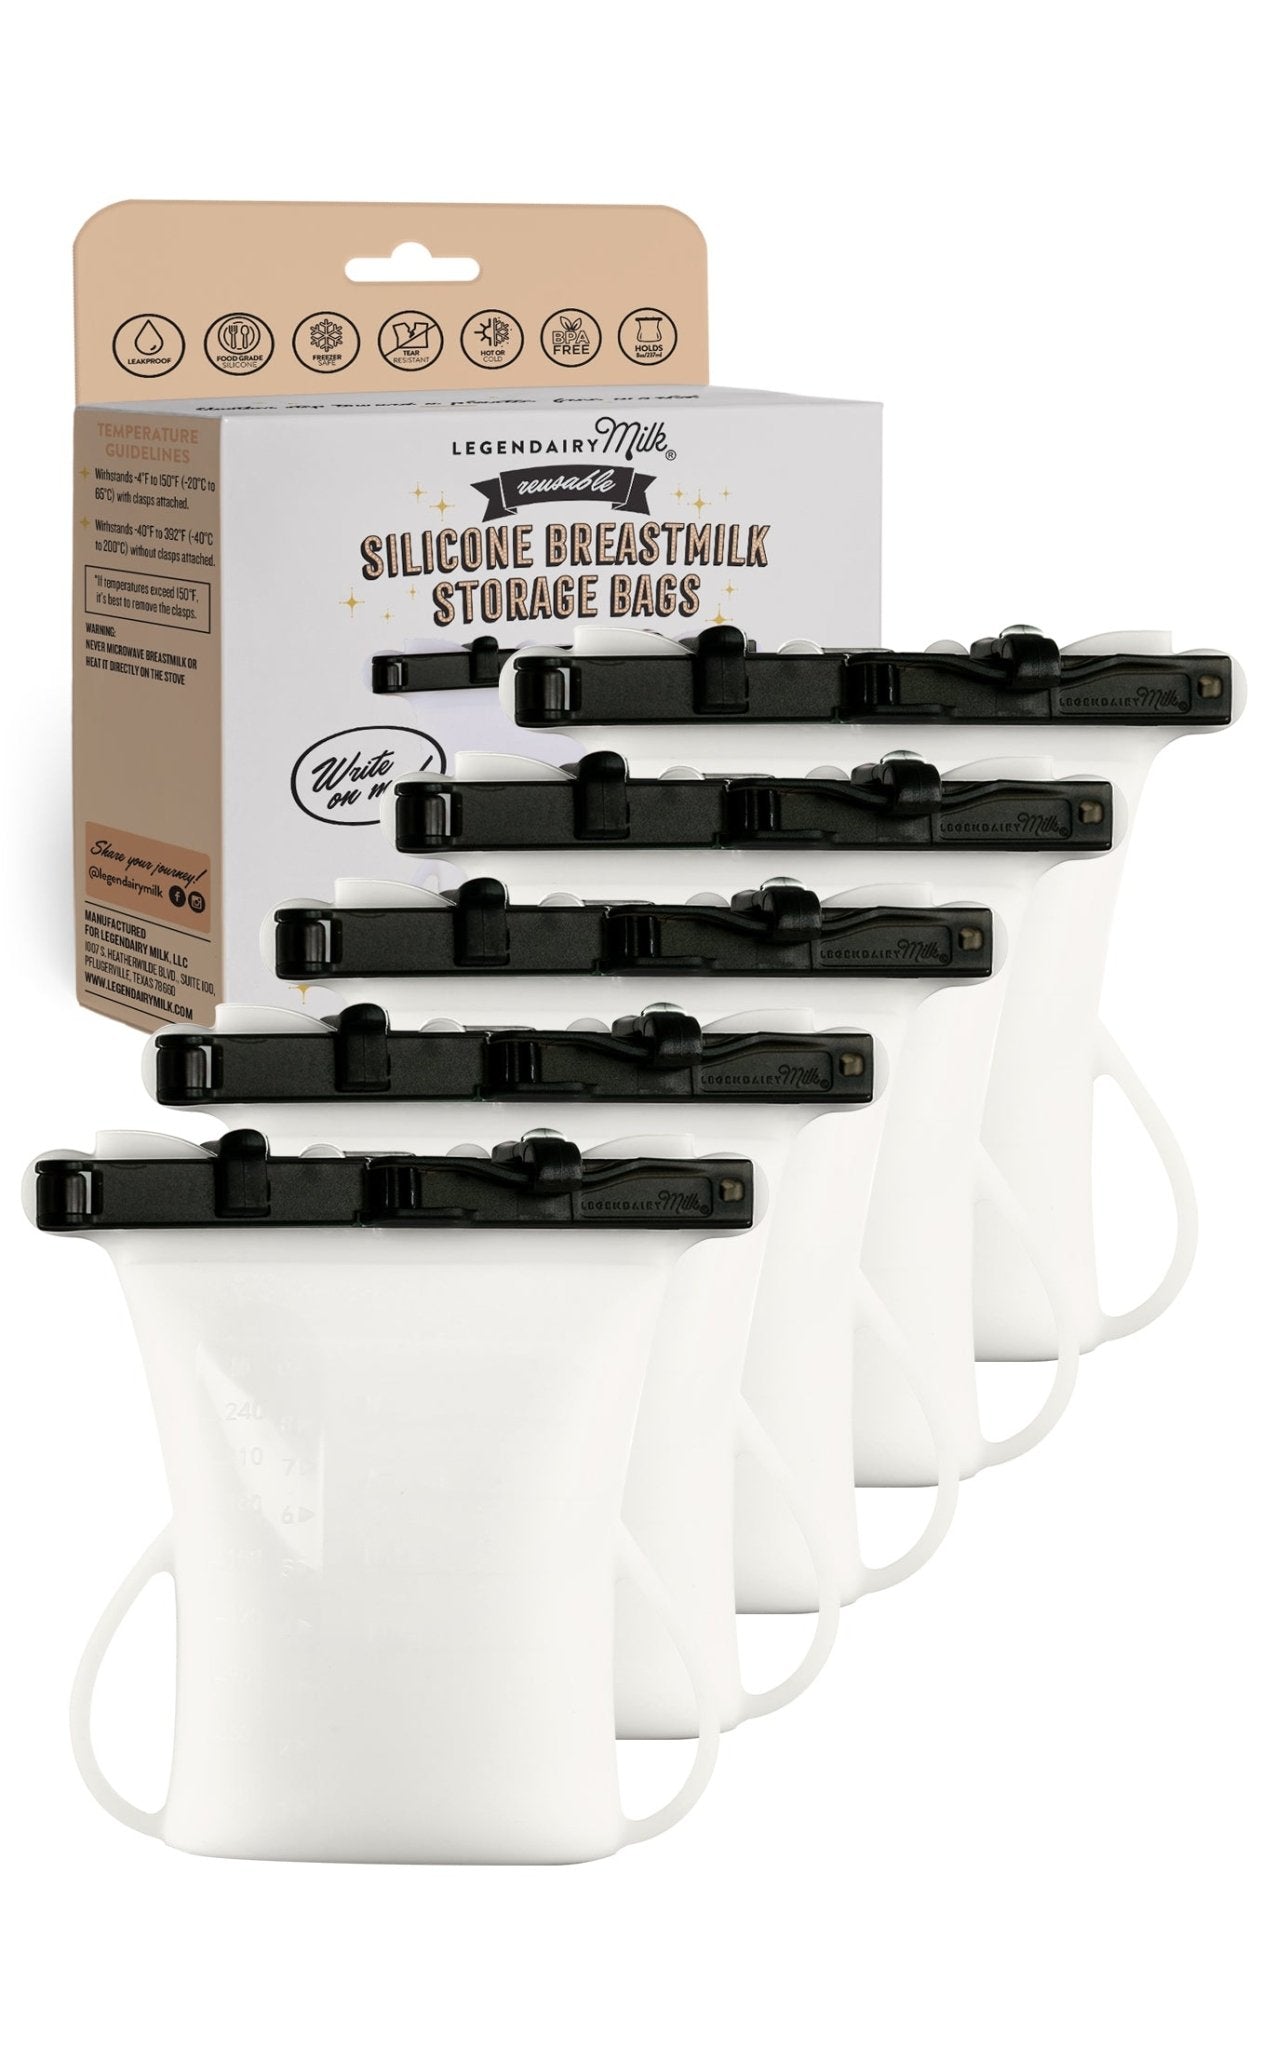 Silicone Breastmilk Storage Bags - Legendairy Milk